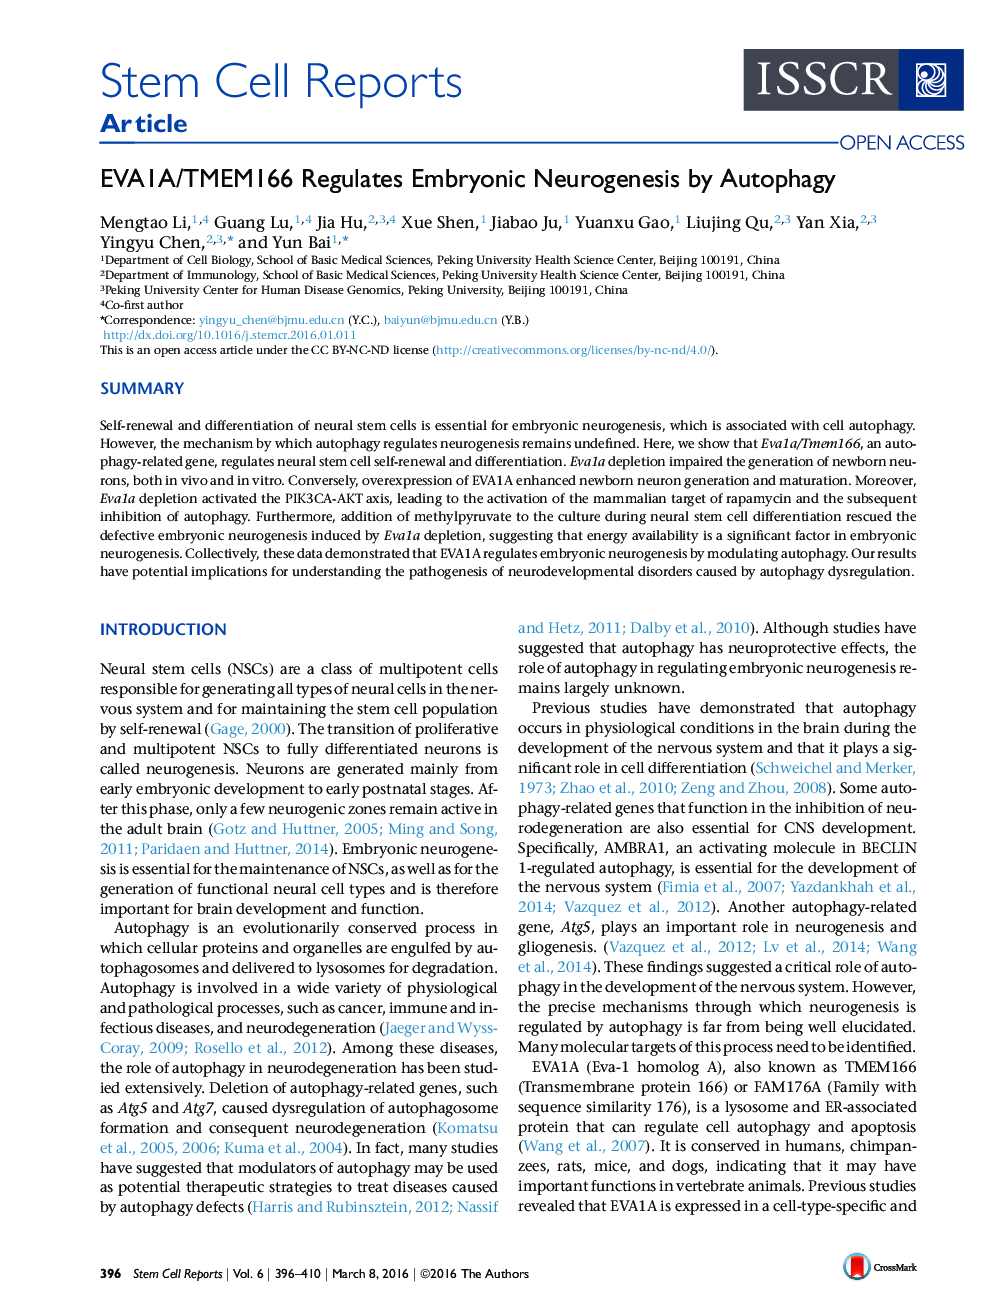 EVA1A/TMEM166 Regulates Embryonic Neurogenesis by Autophagy 